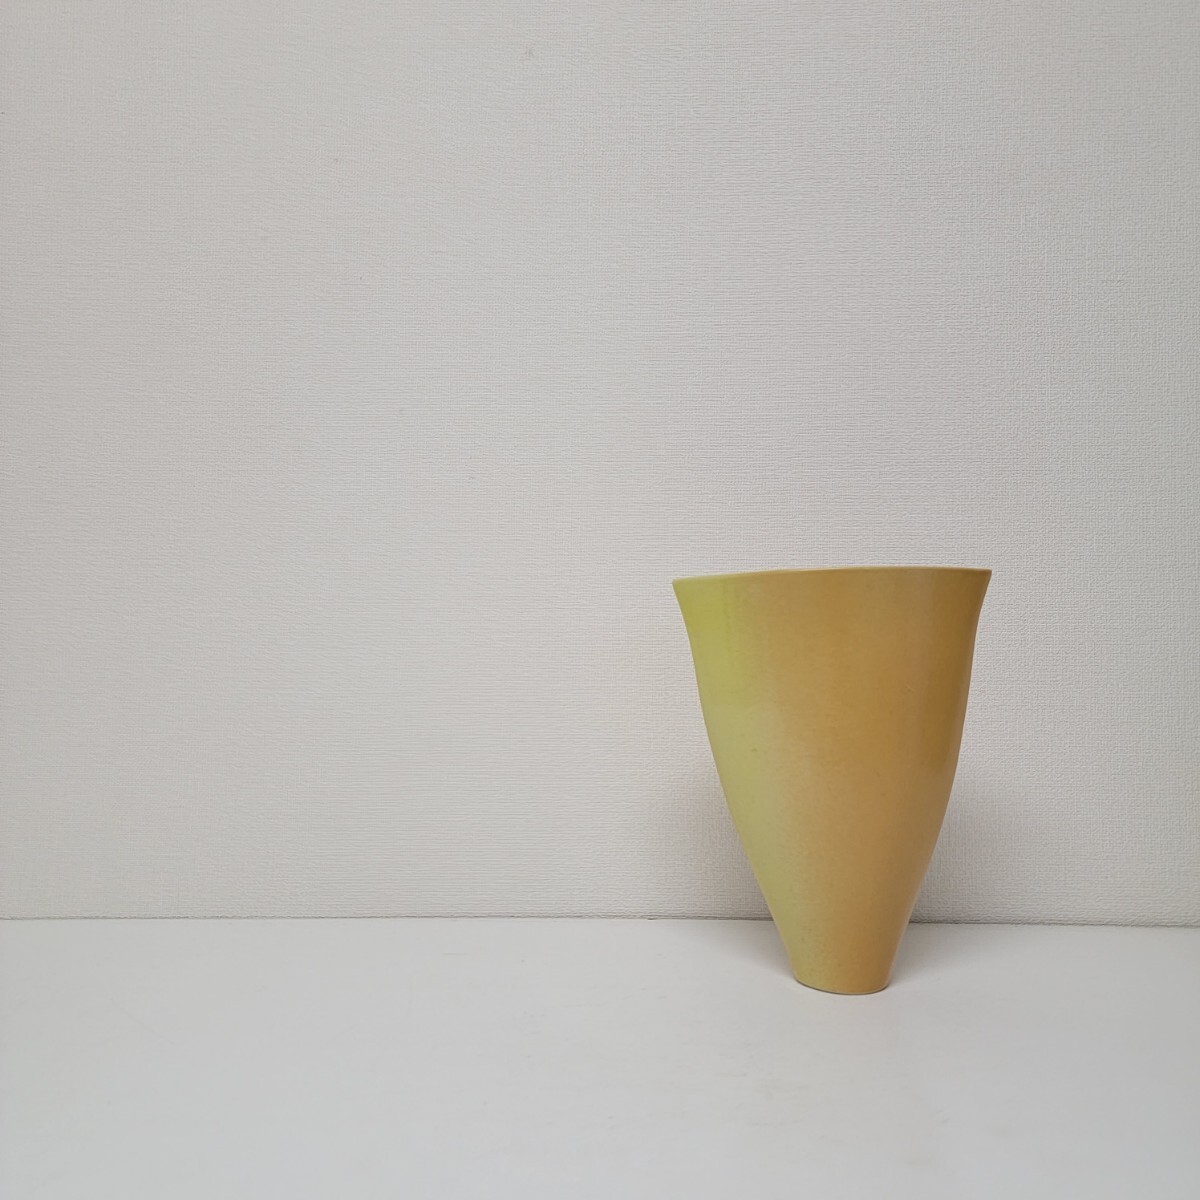 いけばな 池坊 作家陶器 華道師範所蔵品 Japanese Vintage Style Flower Vase 和モダン デザイン フラワーベース 花瓶 花器 04_画像10